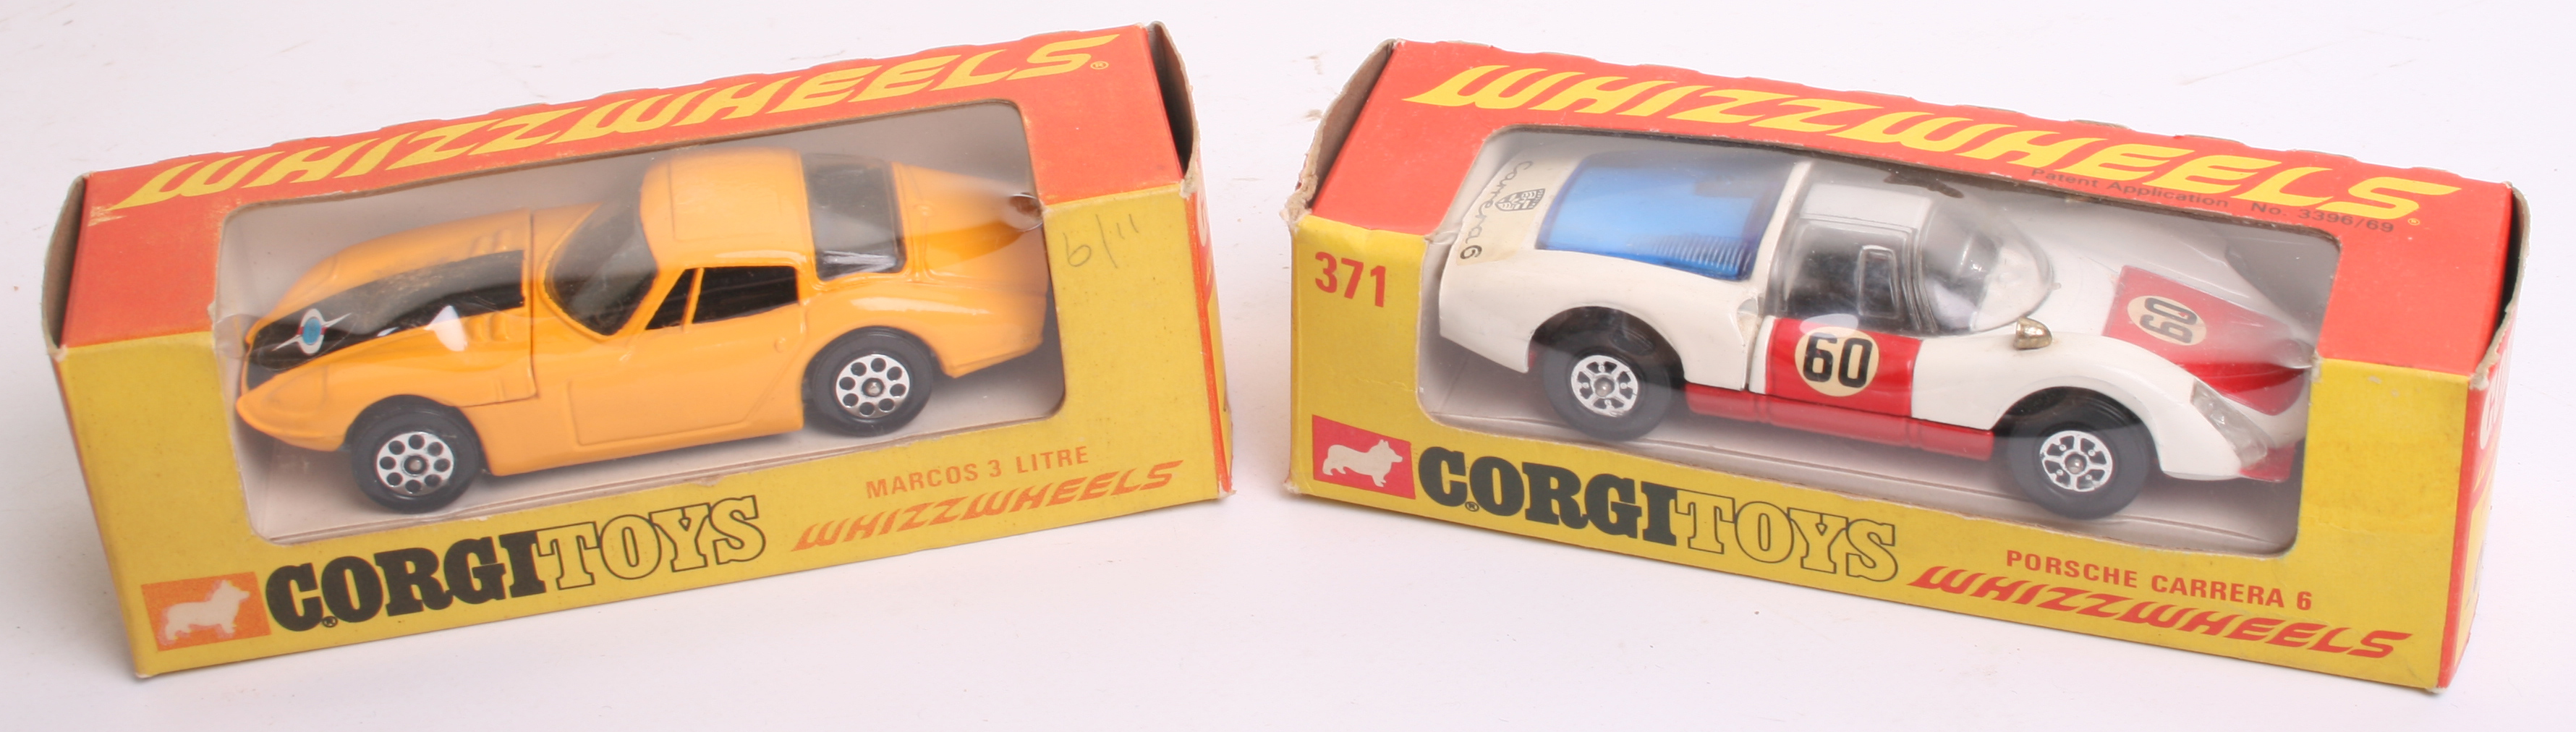 Two Corgi Toys Whizzwheels,317Marcos 3 Litre, orange body, black stripe,371 Porsche Carrera 6,